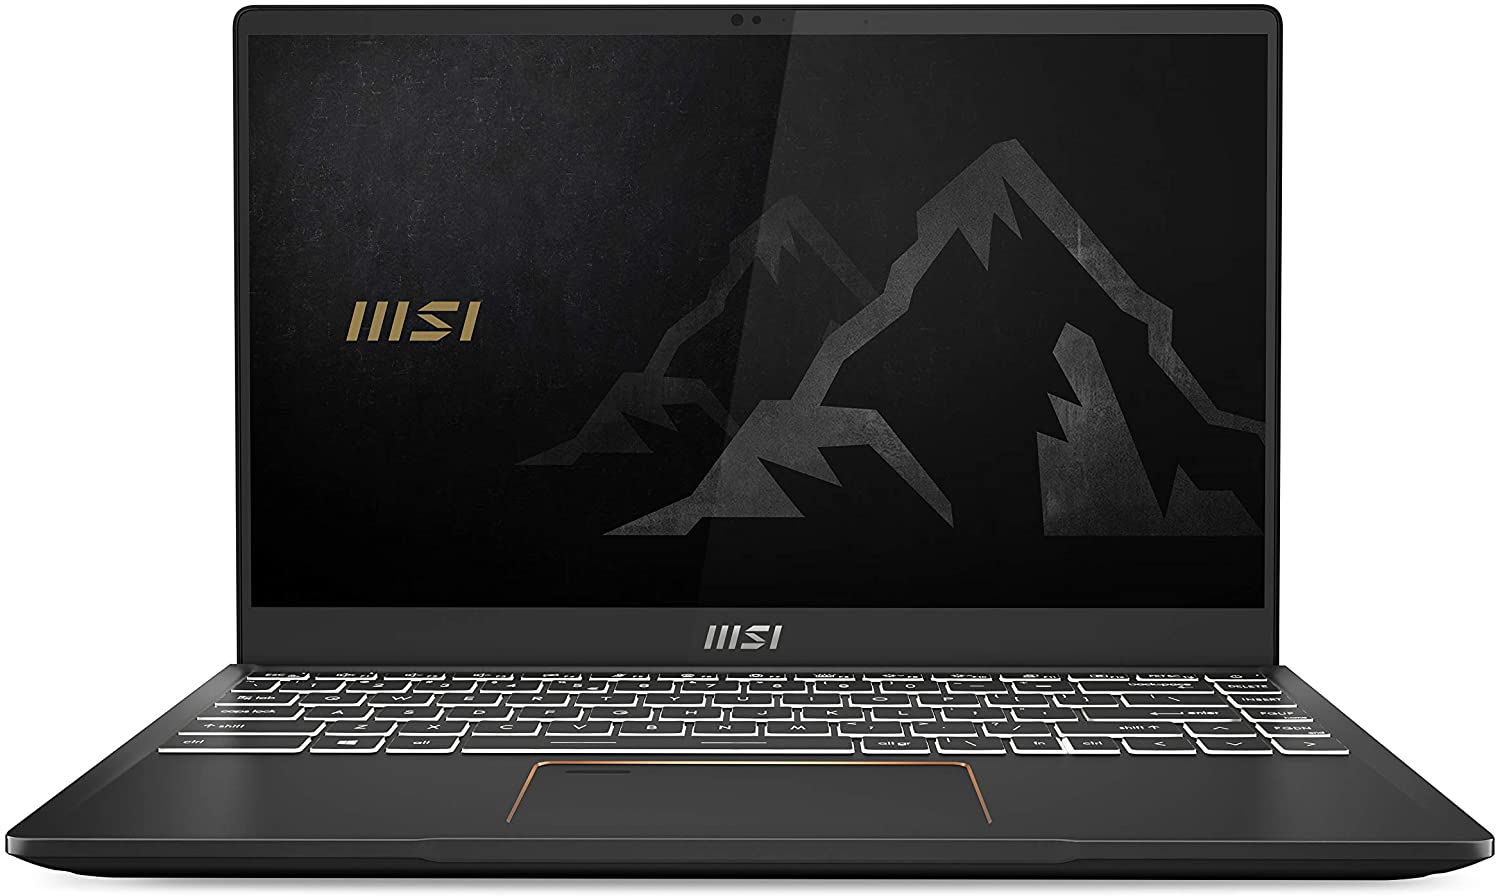 MSI Summit B15 Business Laptop: 15.6'' FHD IPS, i5-1135G7, 16GB DDR4, 512GB PCIe SSD, Thunderbolt 4, Win10 Pro @ $783.26 + F/S